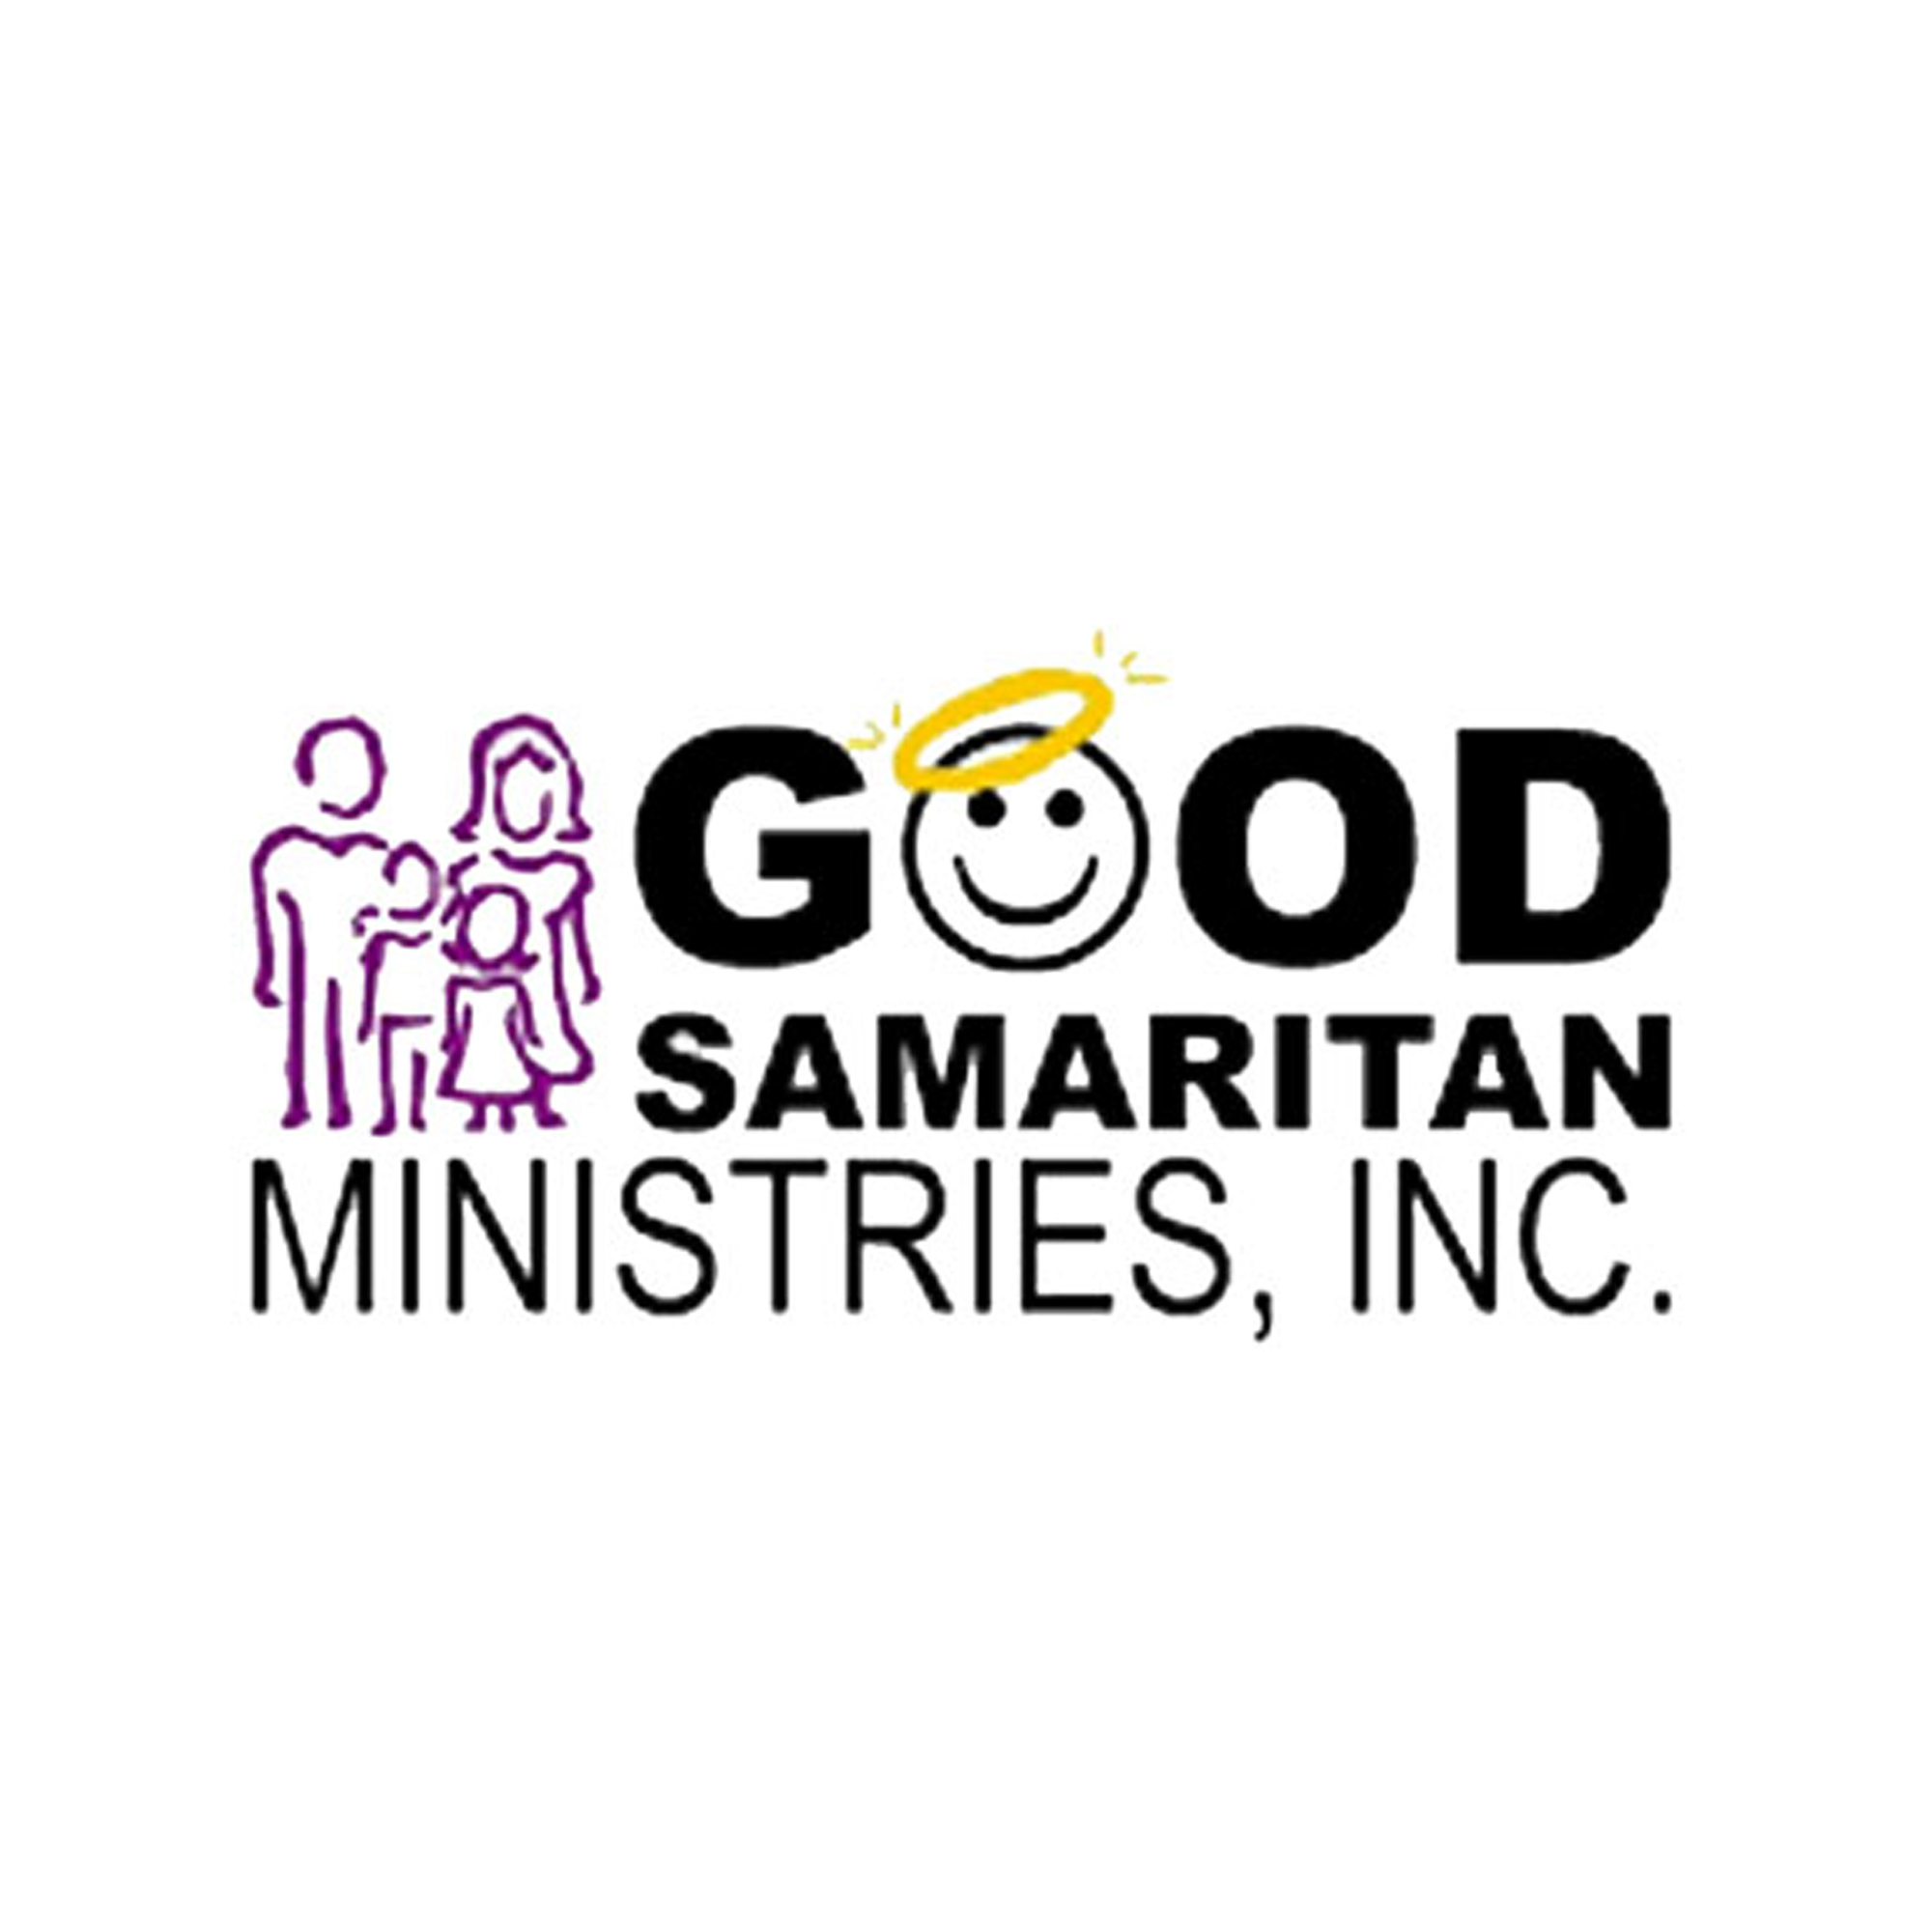 GOOD SAMARITAN MINISTRIES